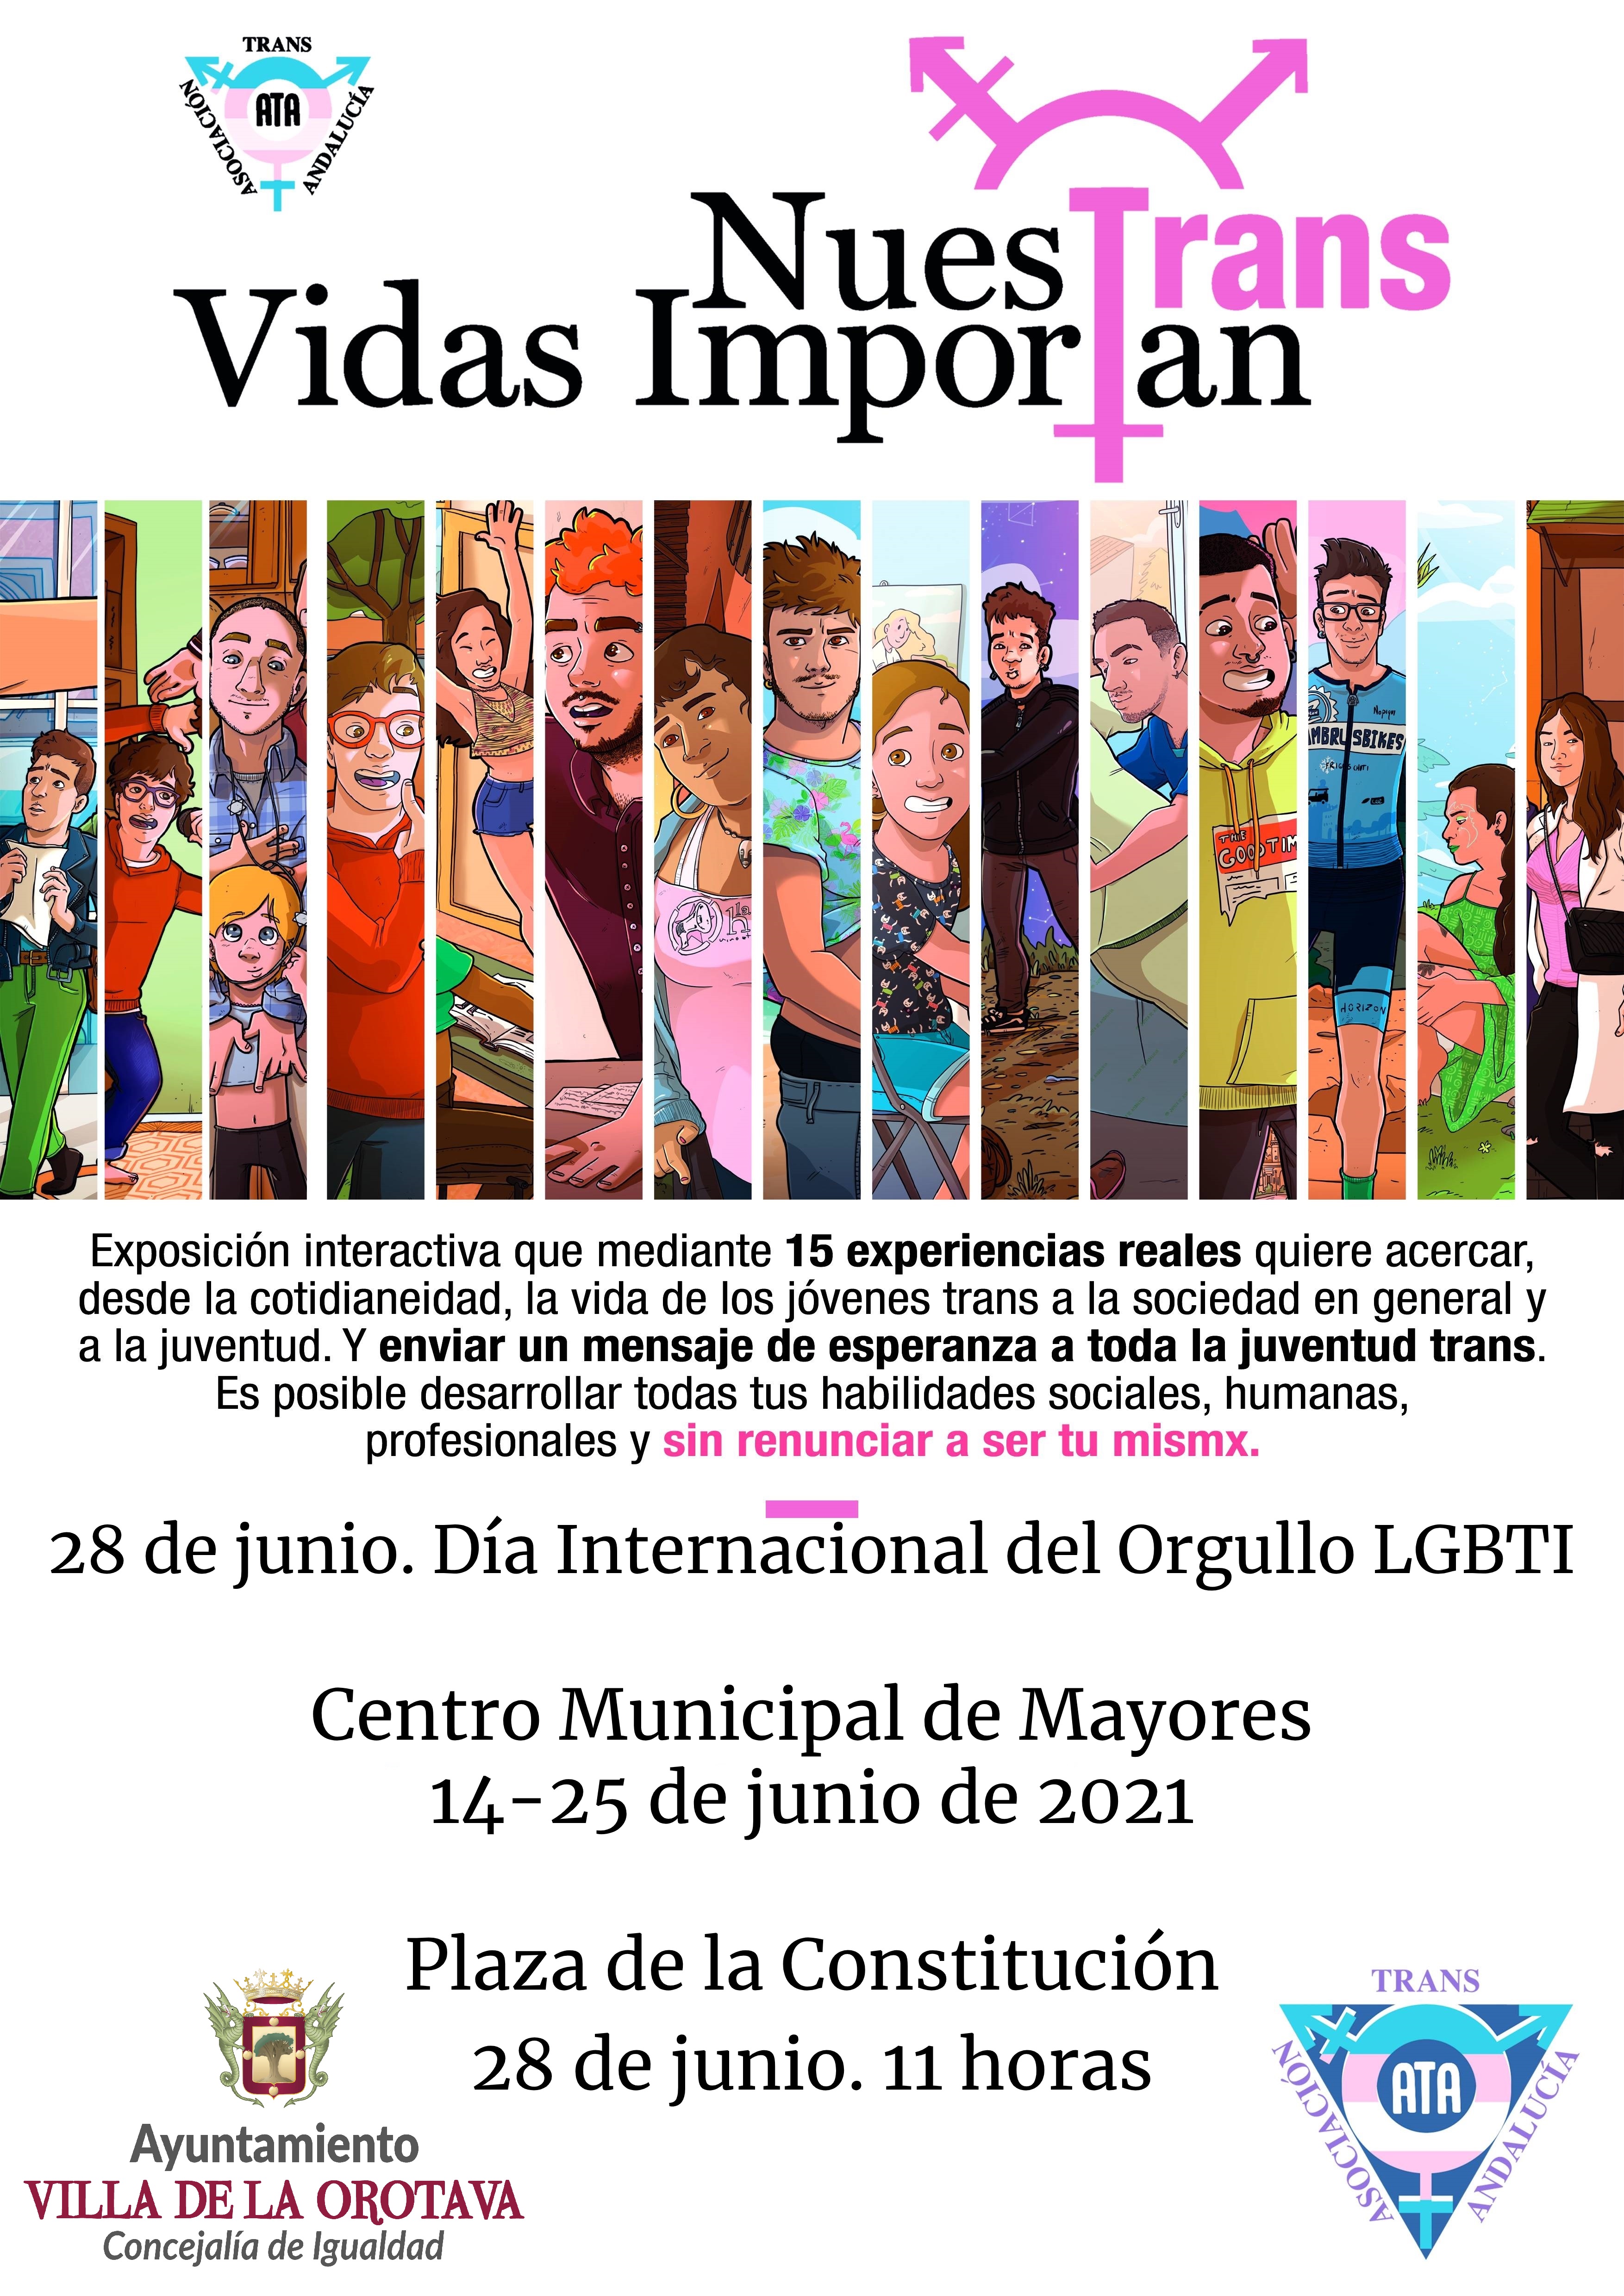 La muestra, con la que se conmemorará el ‘Día Internacional del Orgullo LGTBI’ (28 de junio), se podrá visitar del 14 al 25 de junio, en el Centro Municipal de Mayores de La Orotava